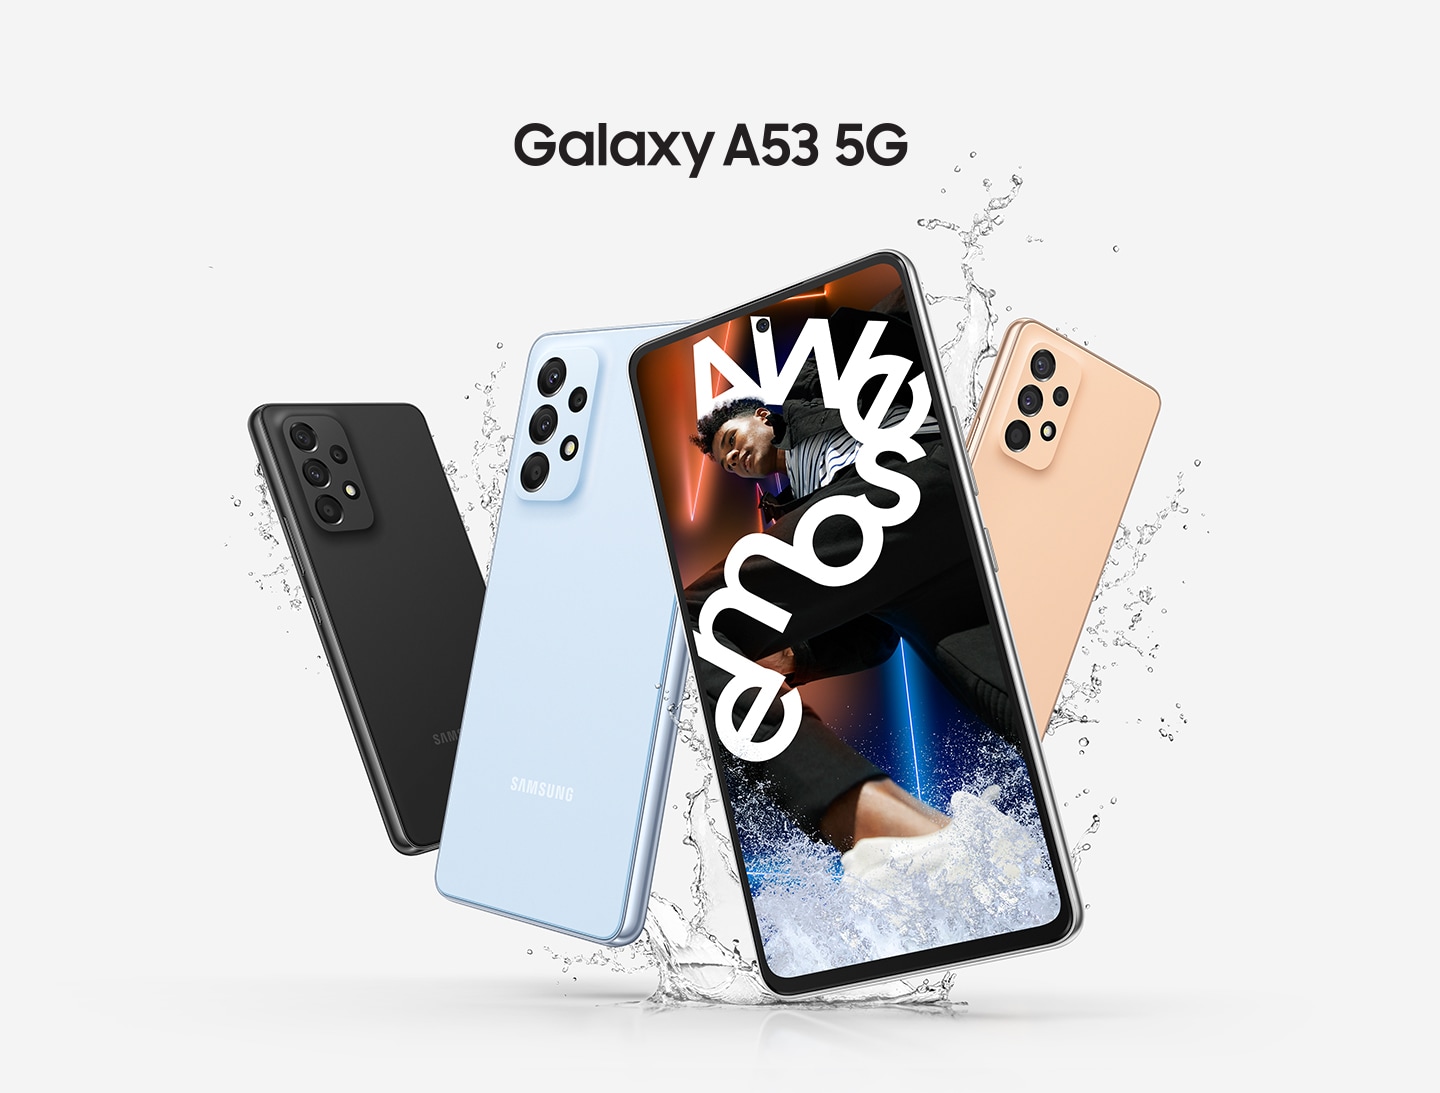 Neljä eriväritsä Samsung Galaxy A53 -puhelinta ja mallin nimi kirjoitettuna niiden yläpuolelle